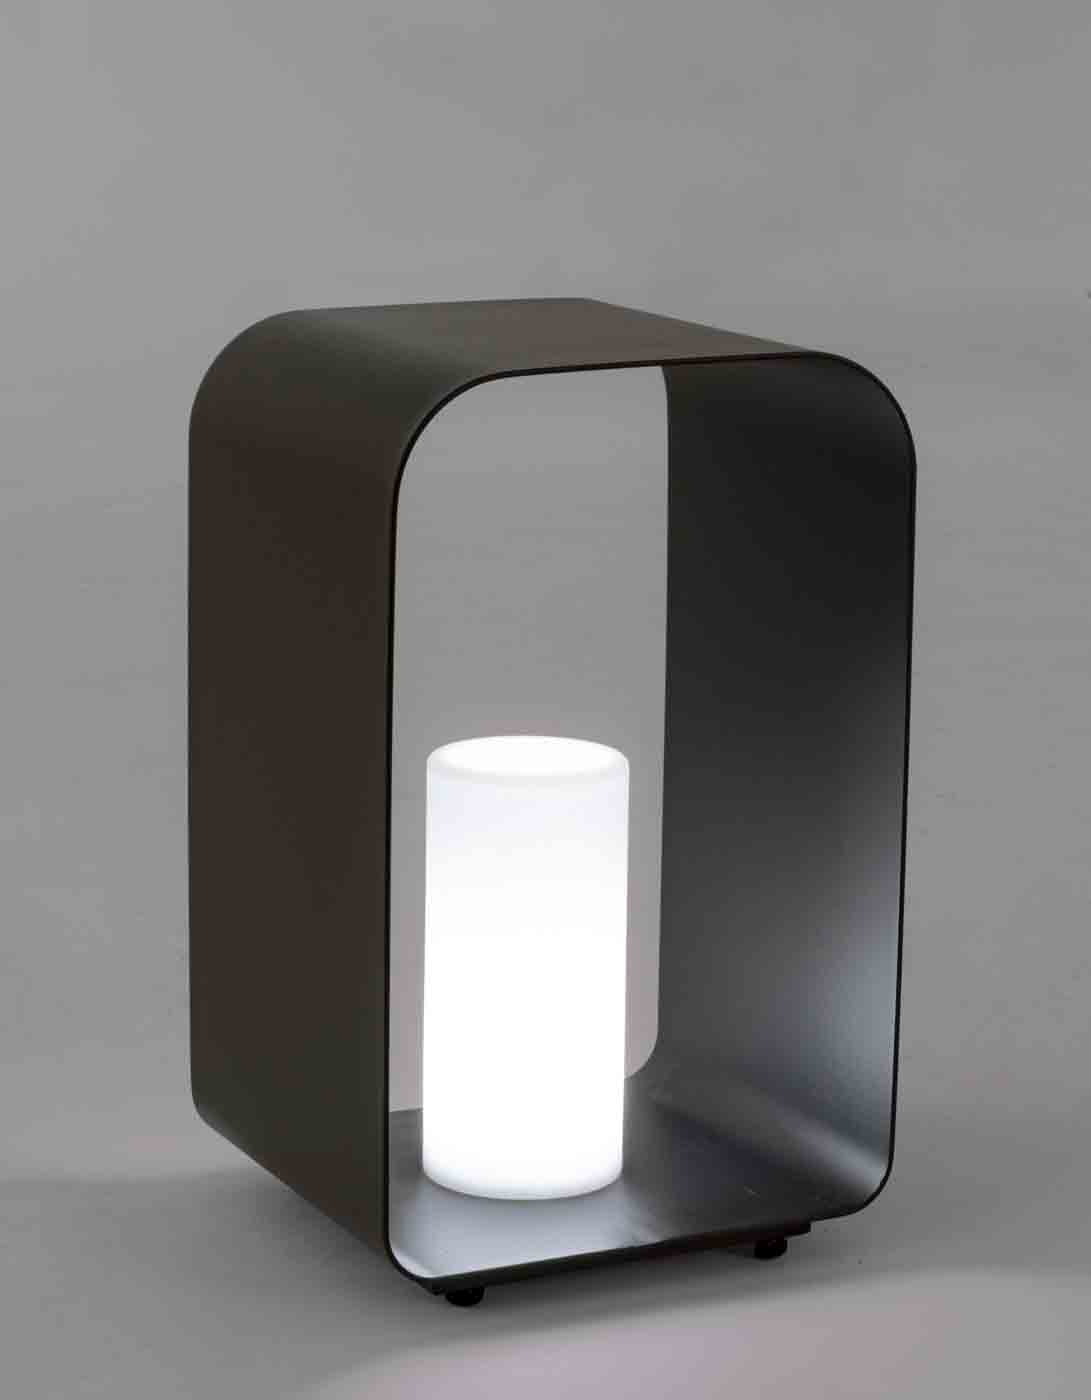 Besondere Outdoor-Lampe Ridley gefertigt aus Aluminium, leuchtet in verschieden Farben